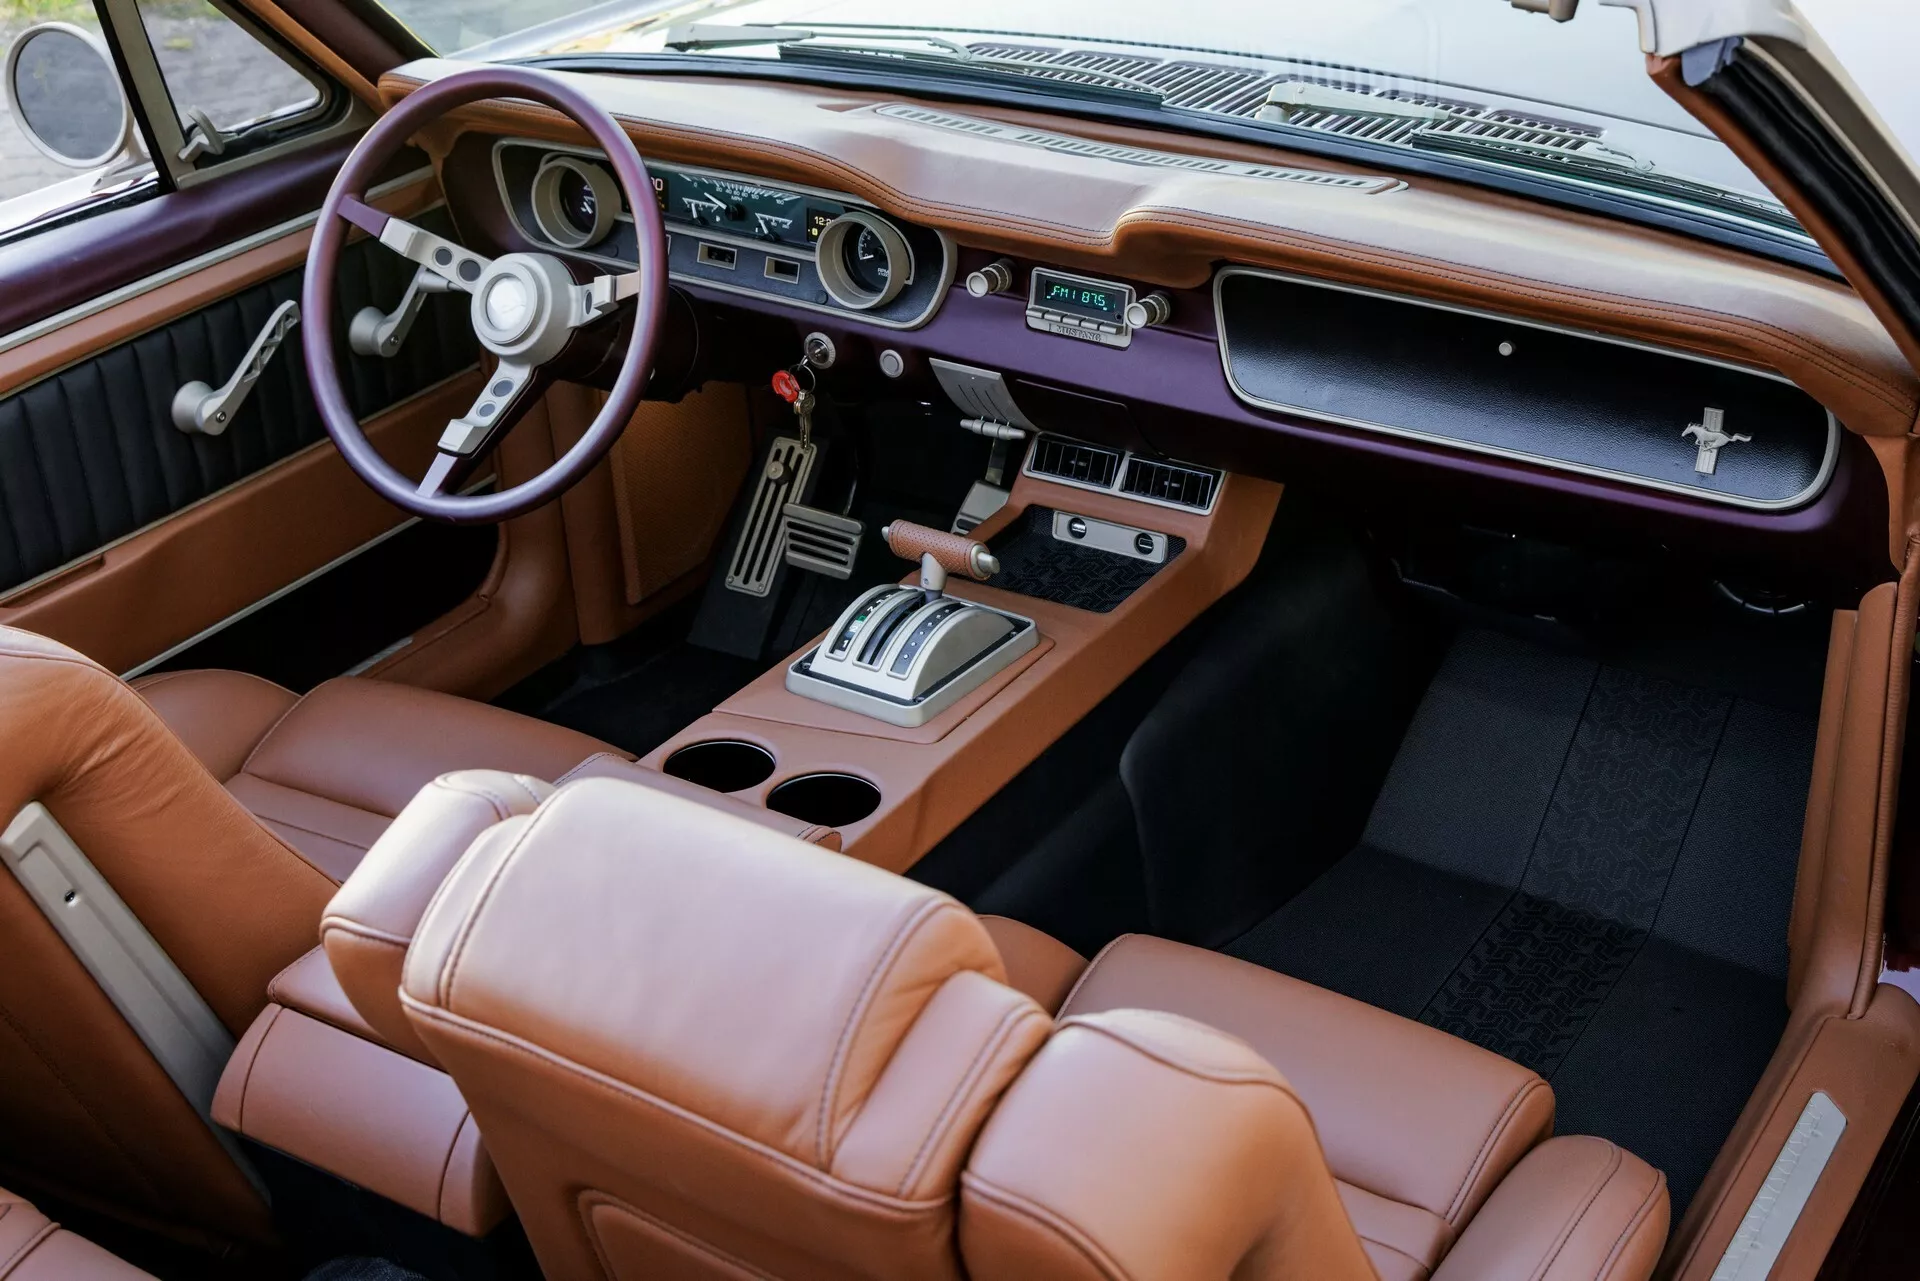 تدشين واحدة من أجمل سيارات فورد موستنج الكلاسيكية في معرض سيما الأمريكي بمحرك 8 سلندر عصري 5